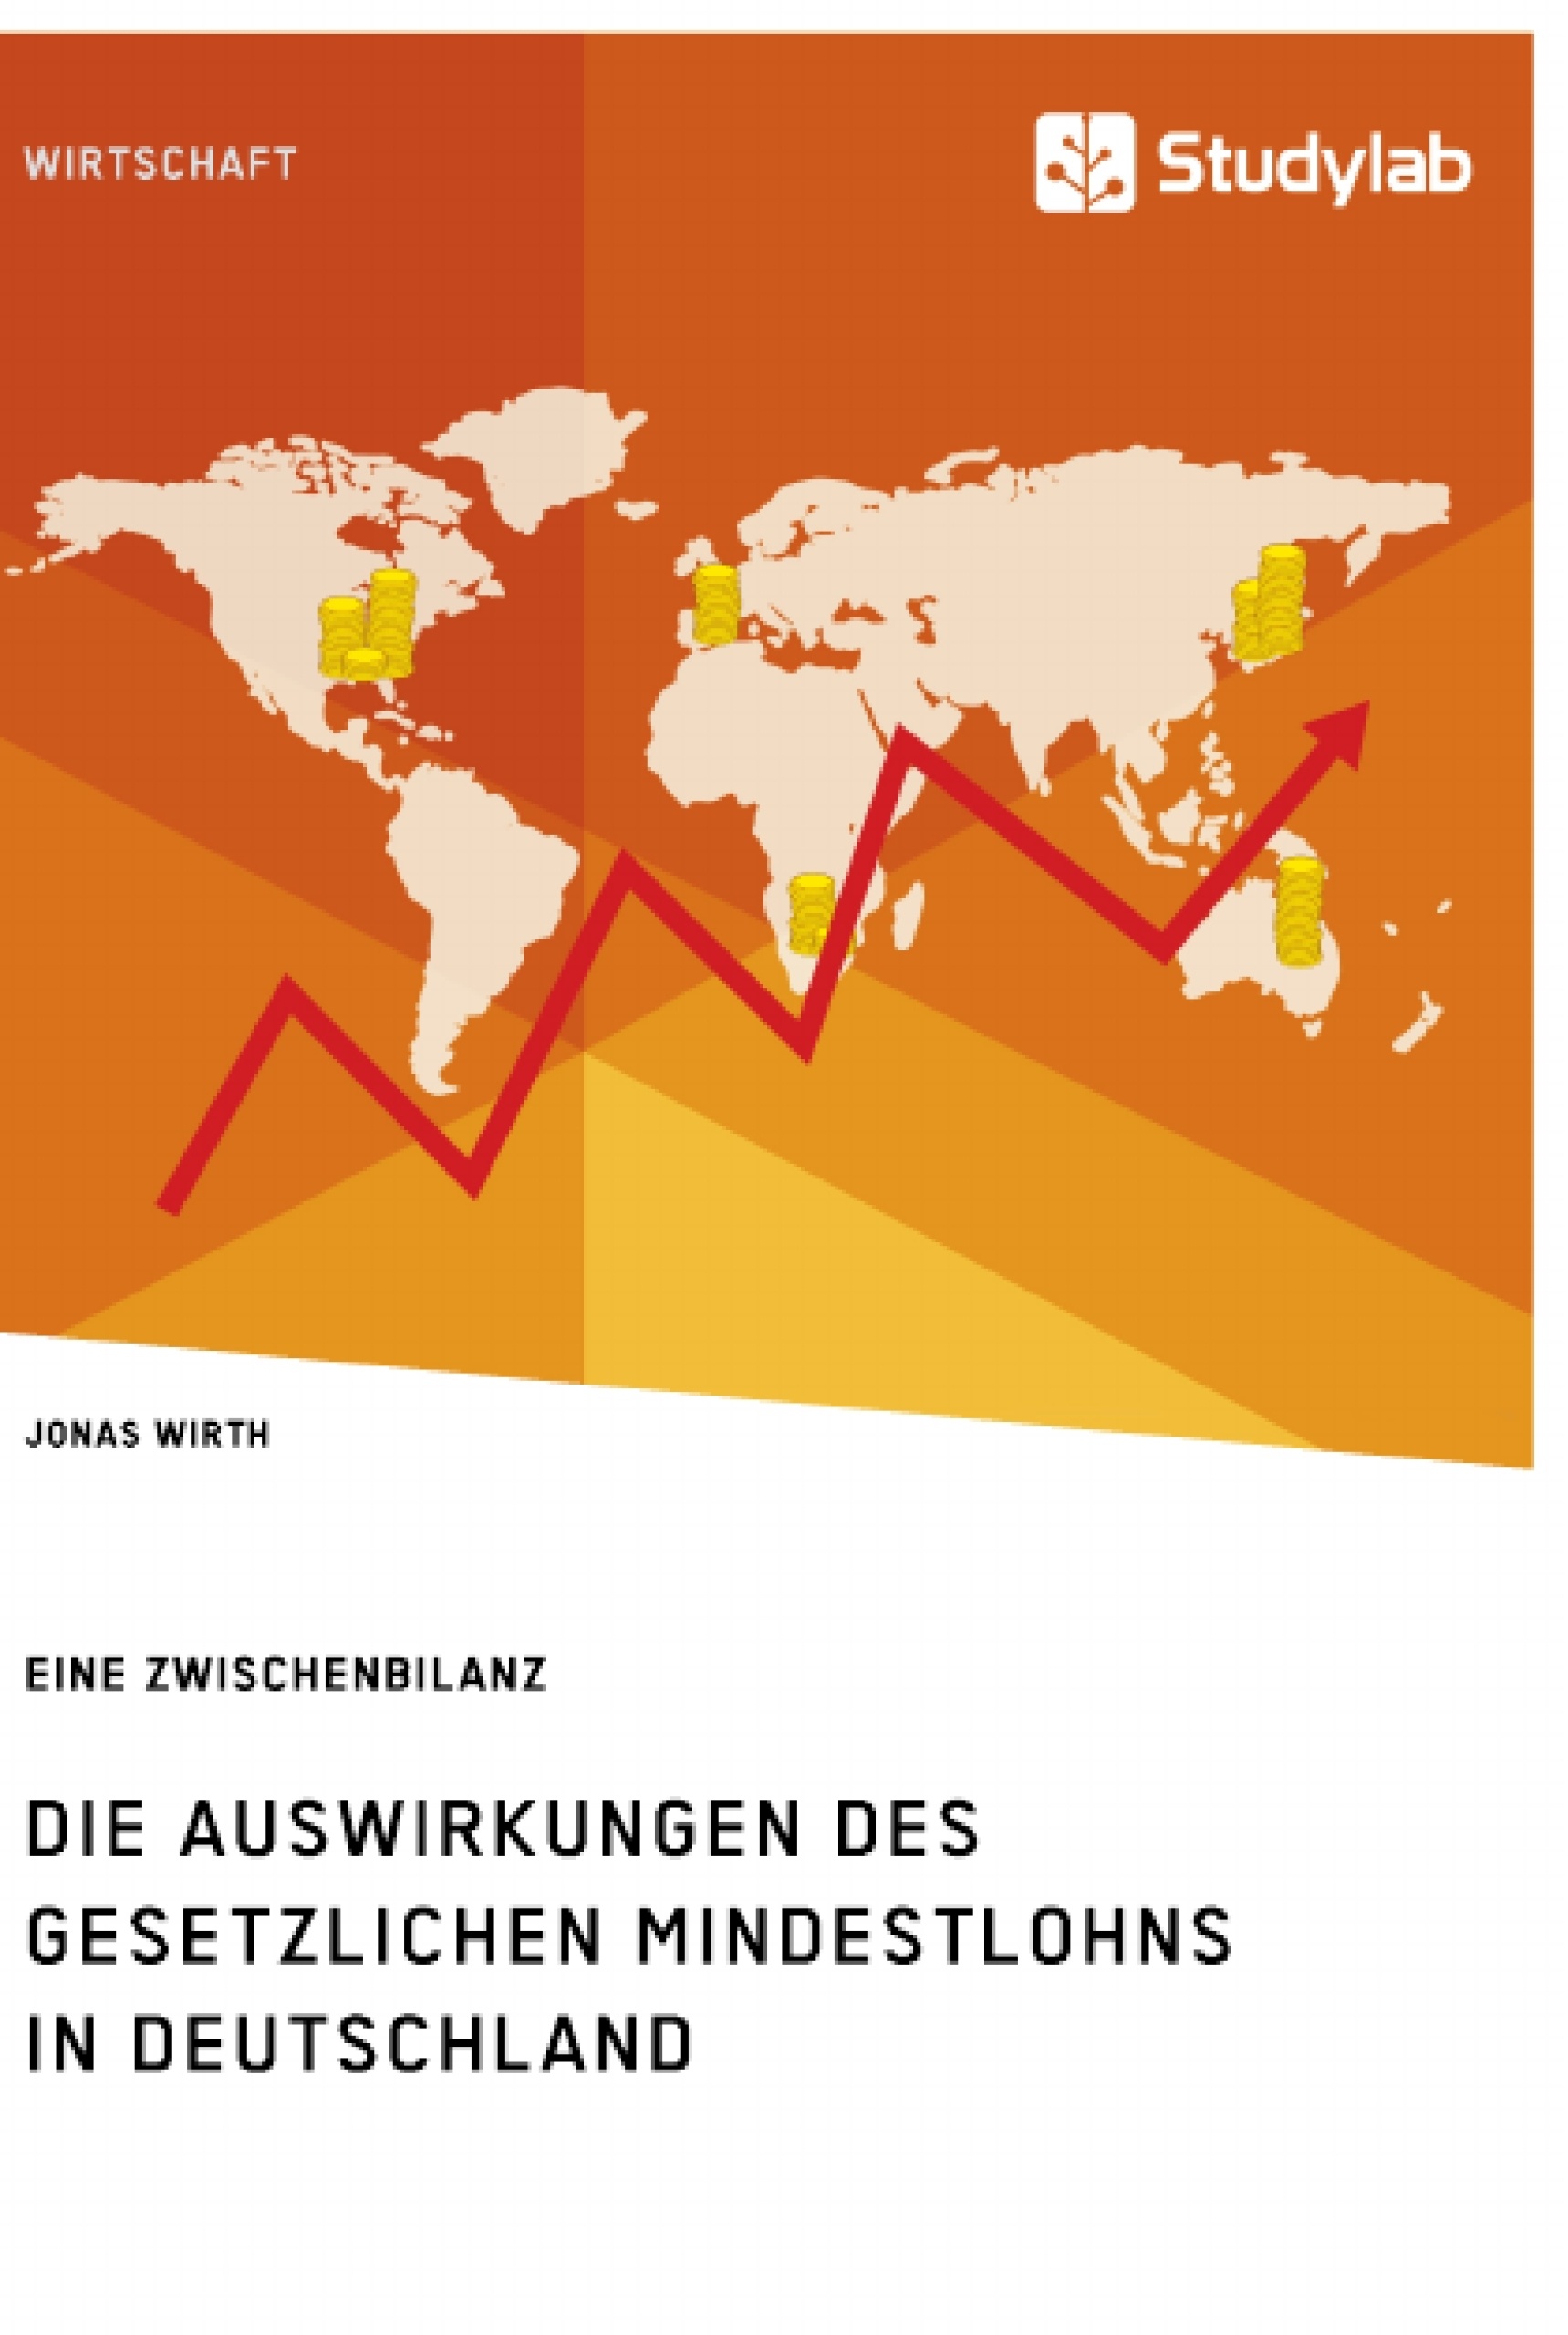 Titel: Die Auswirkungen des gesetzlichen Mindestlohns in Deutschland. Eine Zwischenbilanz